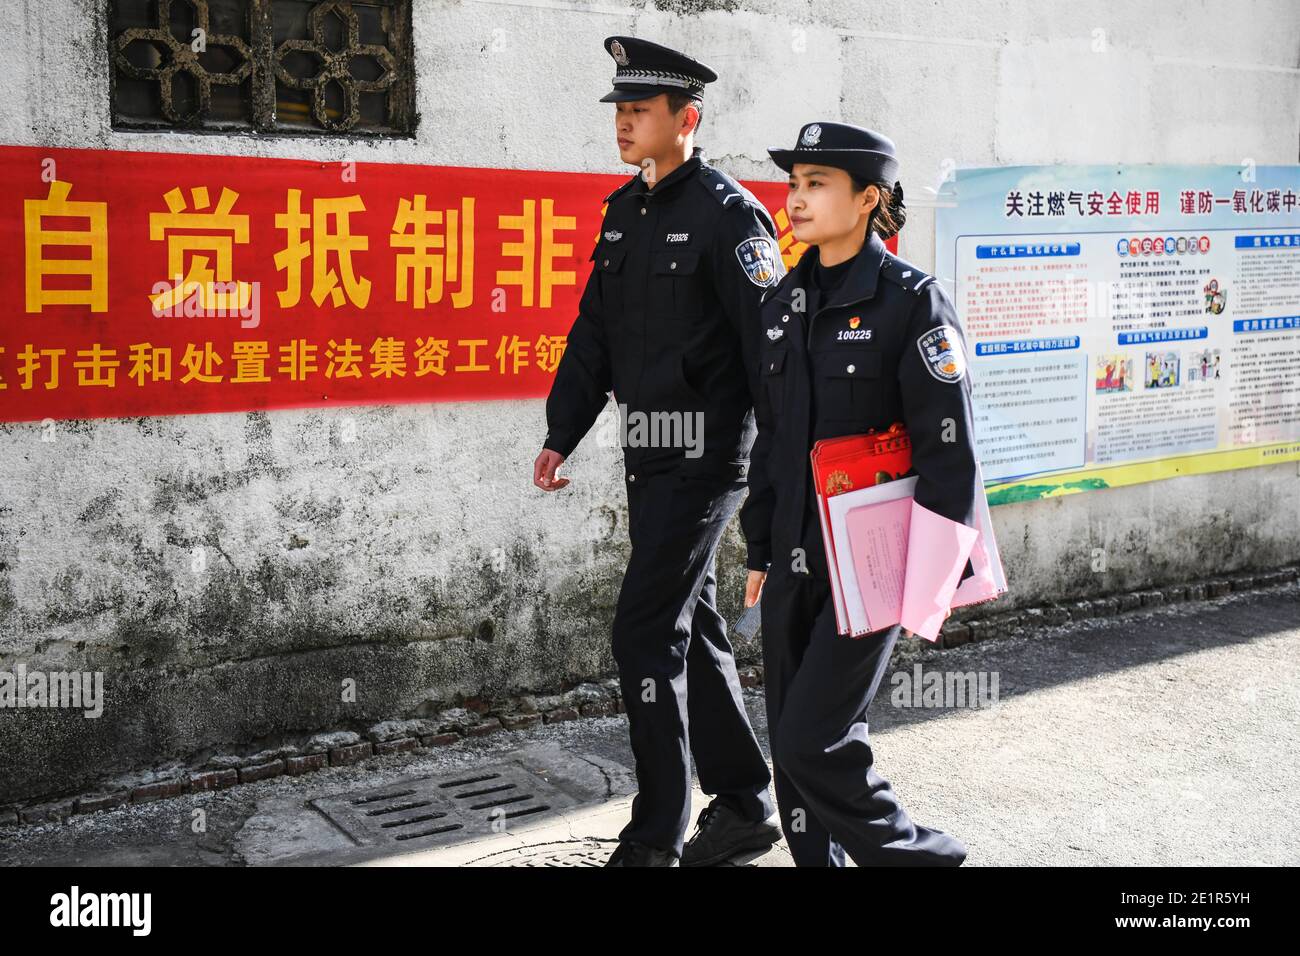 (210109) -- NANNING, 9. Januar 2021 (Xinhua) -- der Polizeibeamte Jiang Lan (R) patrouilliert mit ihrem Kollegen in der Gemeinde Taoyuannan im Bezirk Qingxiu von Nanning, südchinesische Autonome Region Guangxi Zhuang, 31. Dezember 2020. Helfen Sie den verlorenen älteren Menschen nach Hause gehen, Wache vor der Schule stehen, um den Verkehr zu lenken, die Gemeindehändler zu inspizieren, Sicherheitsbroschüren zu verteilen und die Bewohner zu besuchen... Dies ist die übliche Arbeit des Gemeindepoliziers Jiang Lan. Jiang, 26 Jahre alt, kam nach seinem Abschluss in der Volksstube zur Zhongshan Polizeistation der Qingxiu Niederlassung des Büros für Öffentliche Sicherheit in Nanning Stockfoto